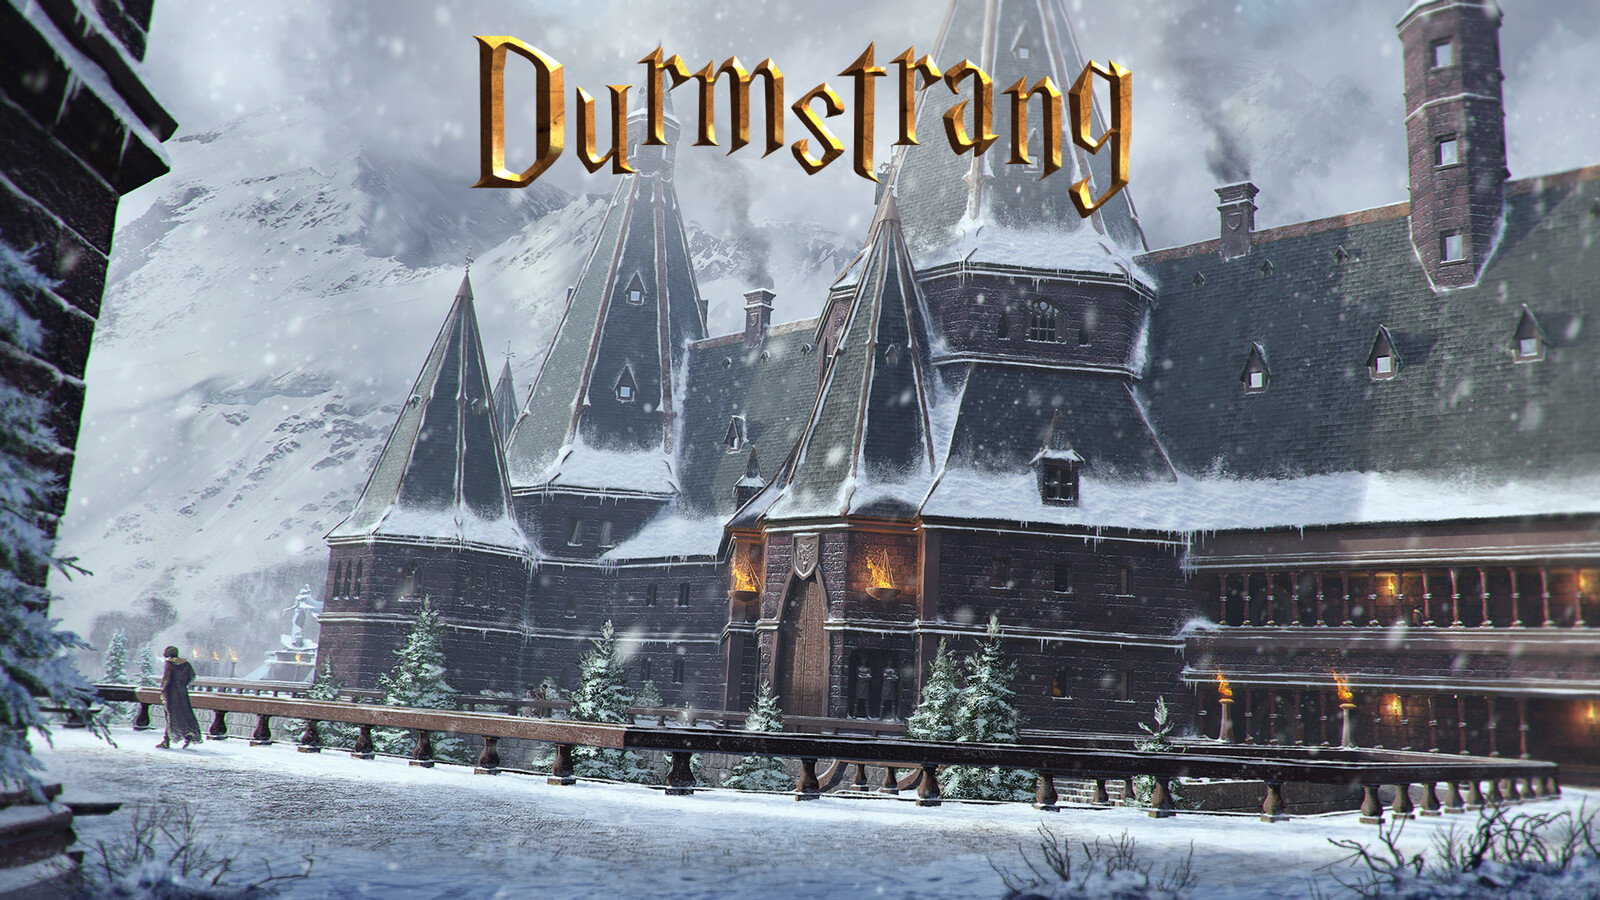 Durmstrang - Snowy Establishing shot